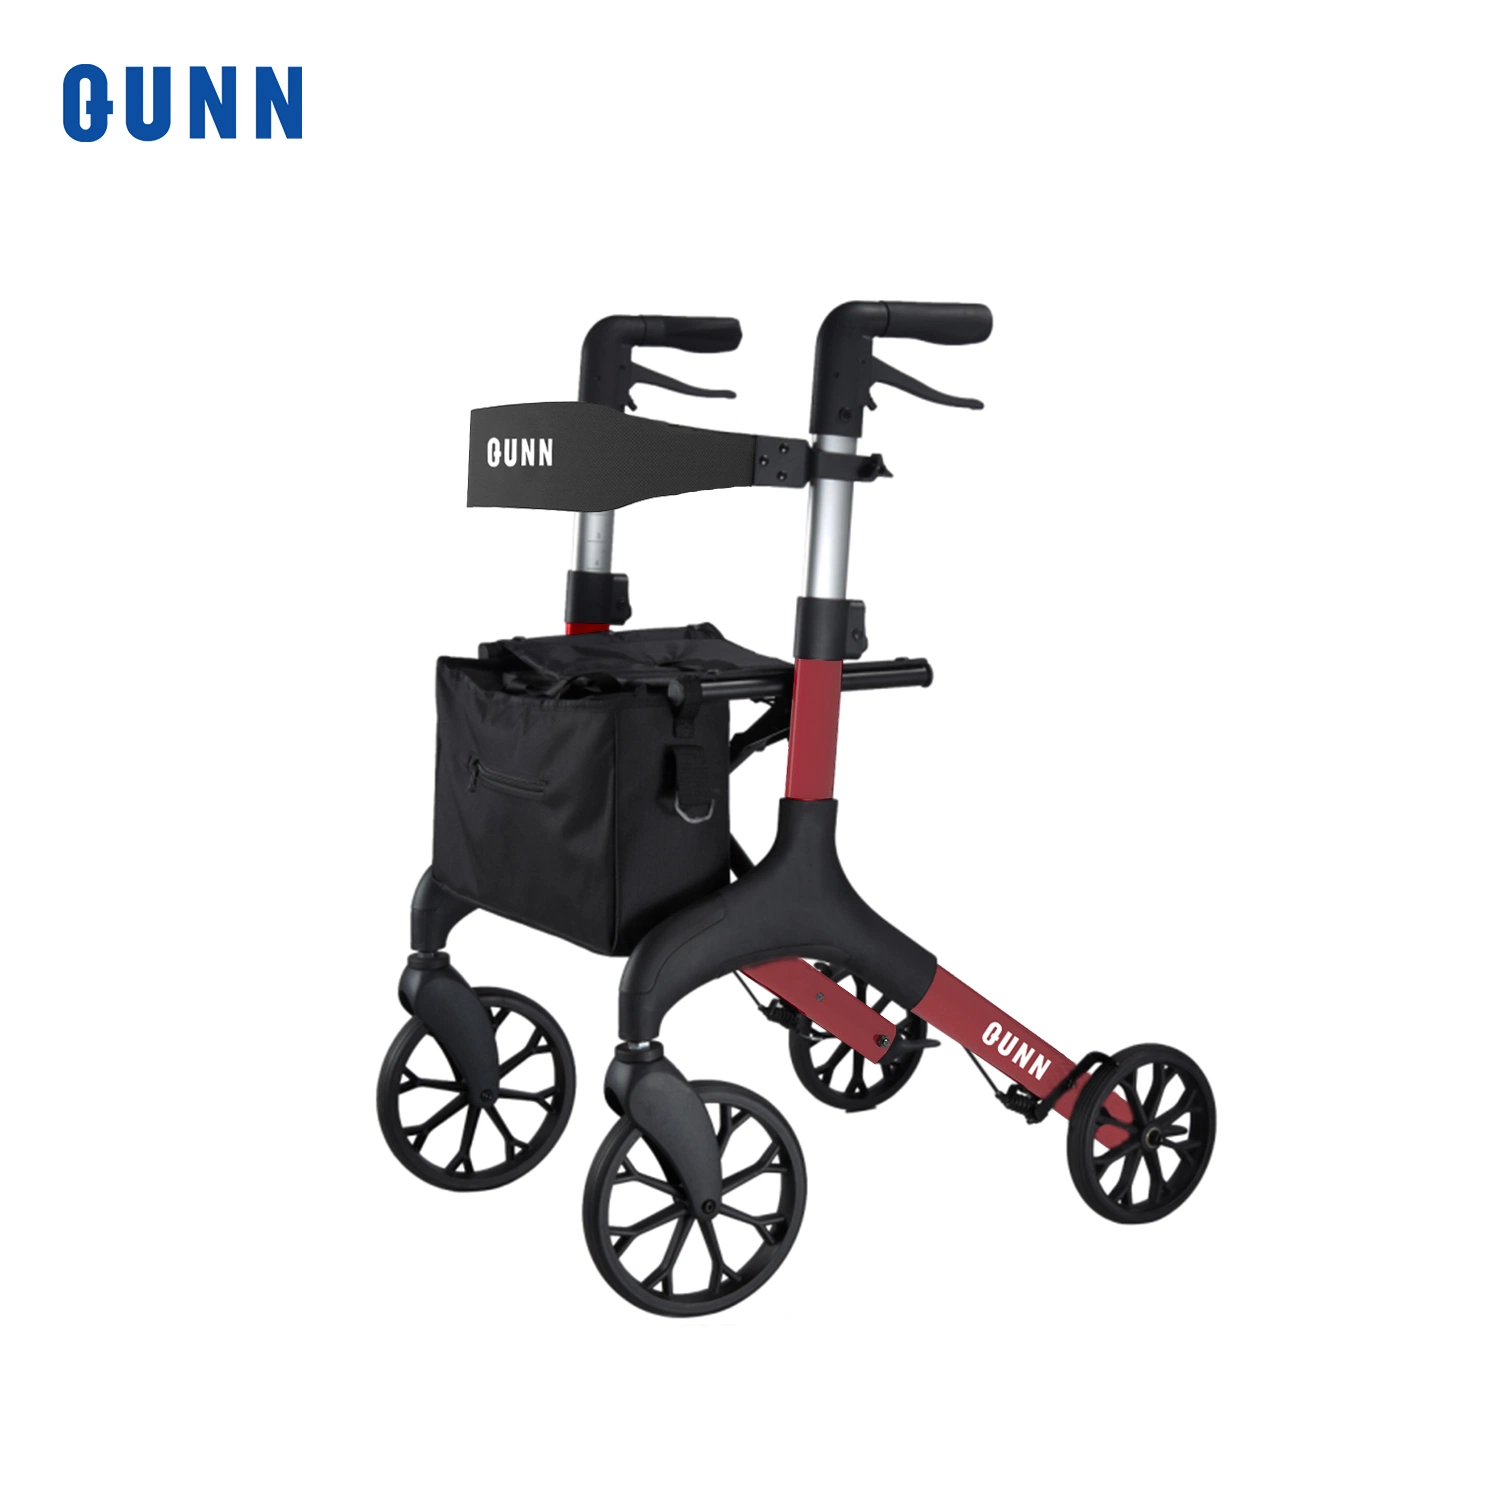 Suministros de Salud de las 4 ruedas plegable adultos Walker Rollator con asiento y bolsa de almacenamiento